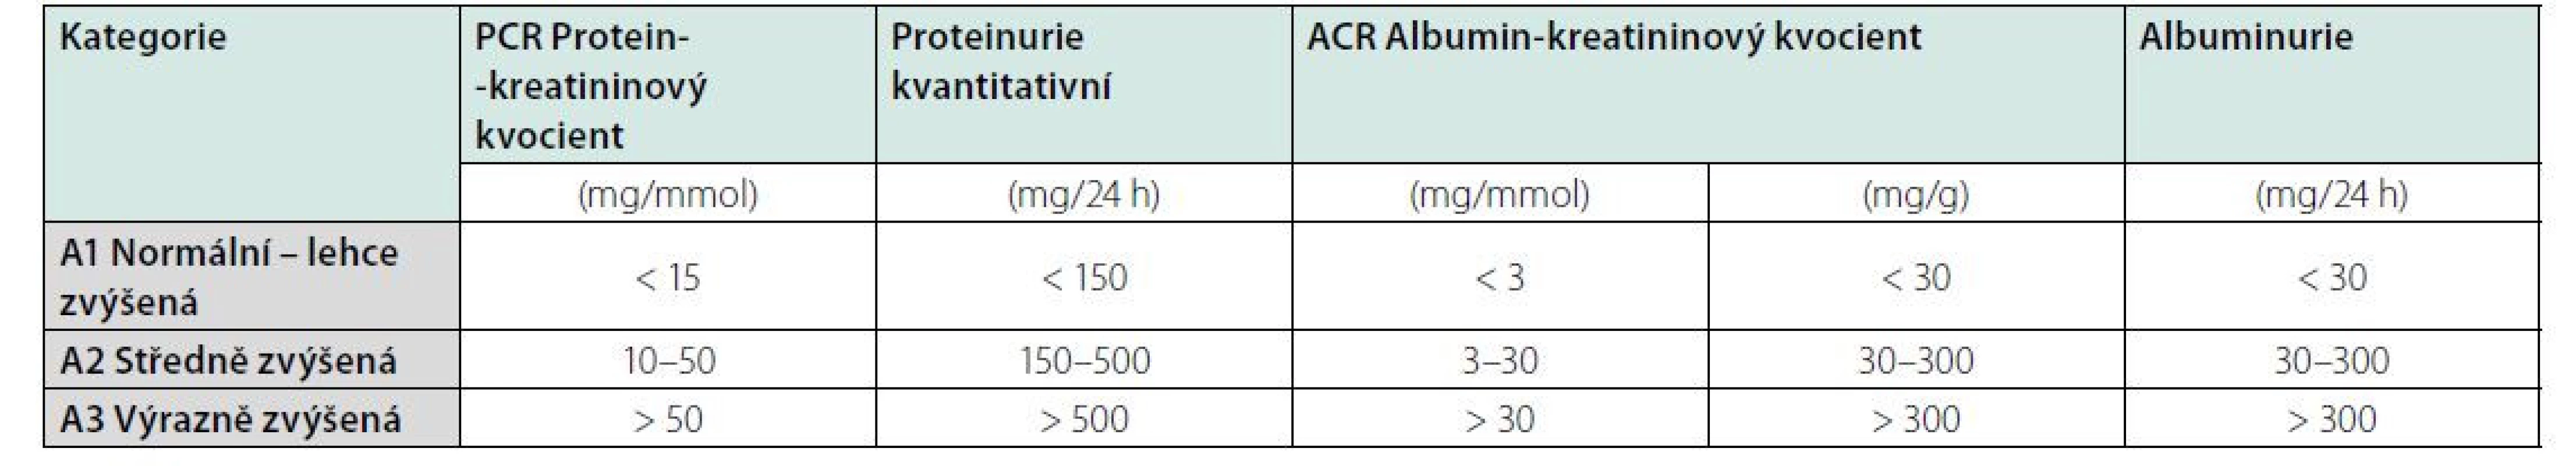 Kategorie albuminurie při chronickém onemocnění ledvin